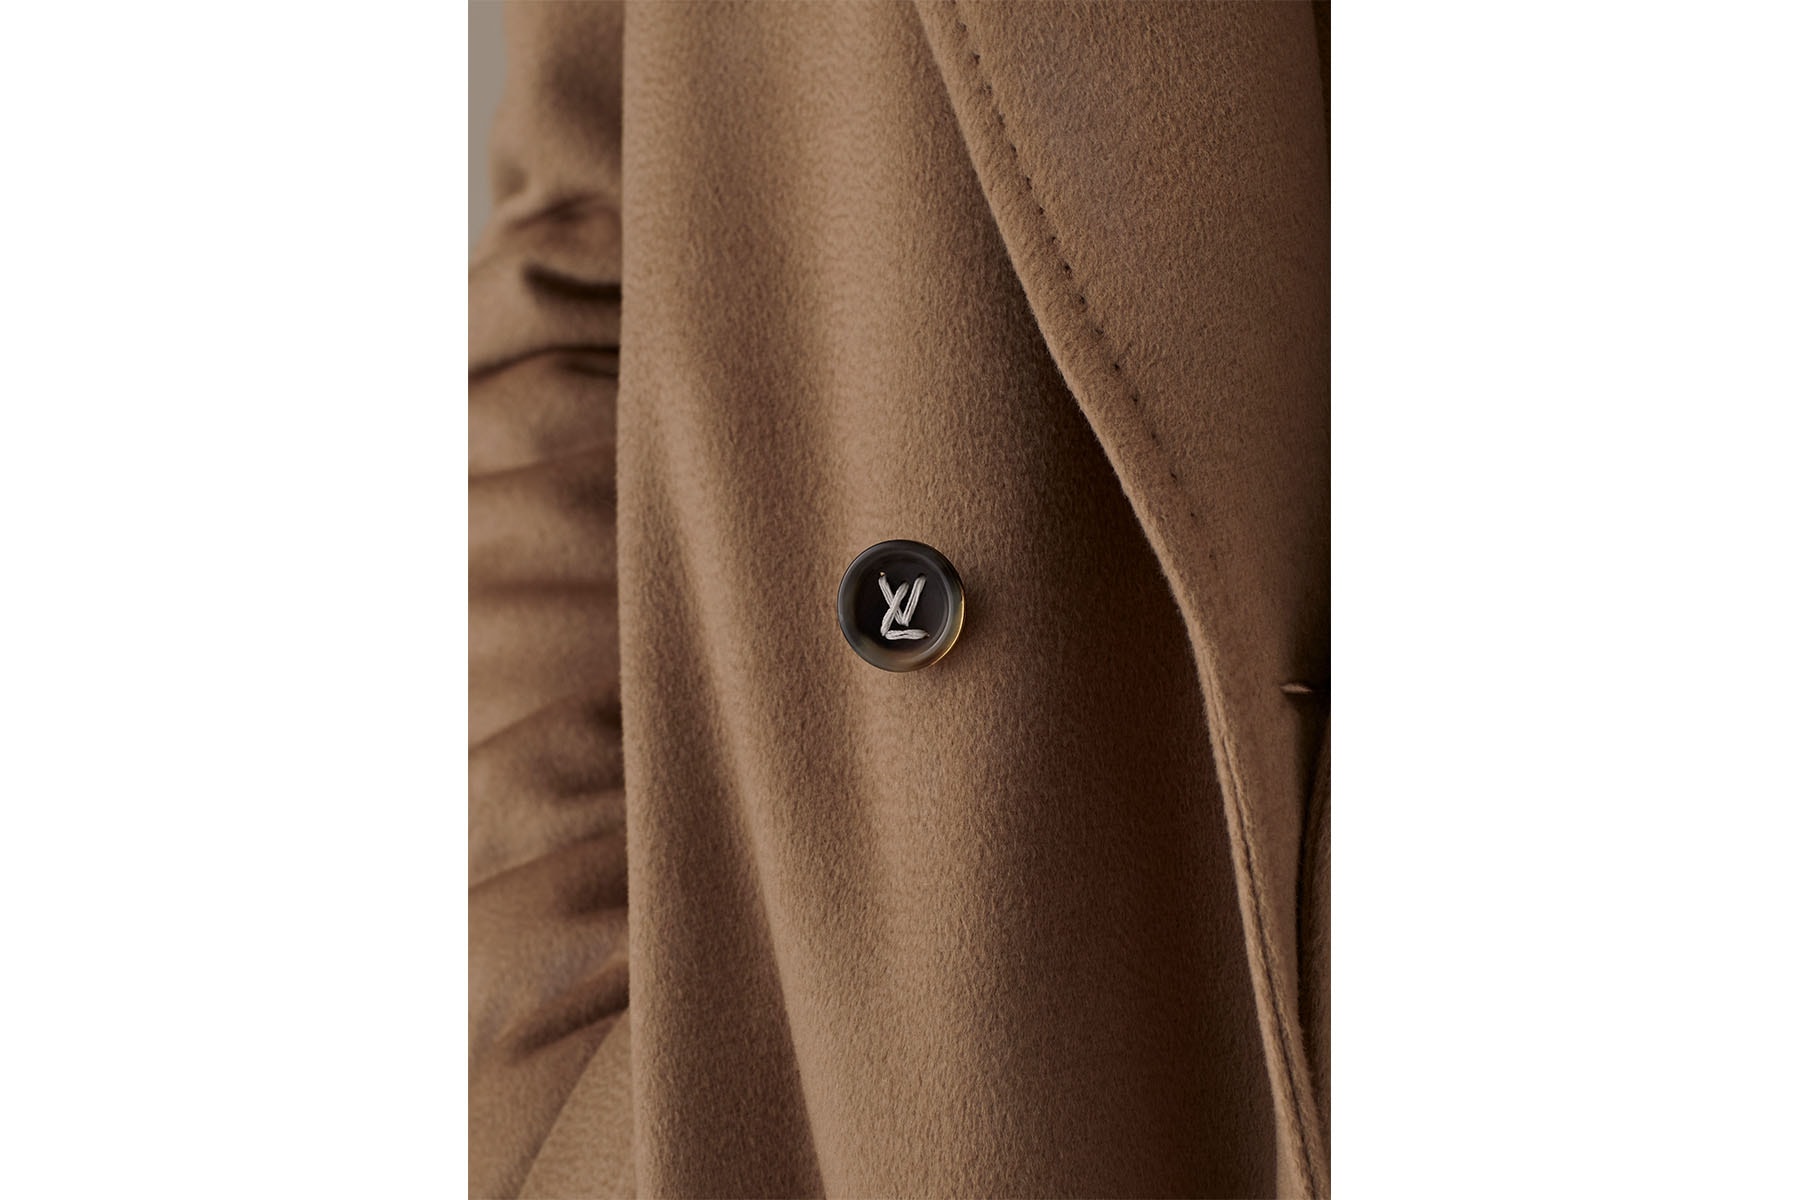 ルイ･ヴィトン Louis Vuitton がヴァージル・アブロー virgil abloh 手がける新ライン “Staples Edition by Louis Vuitton” をローンチ